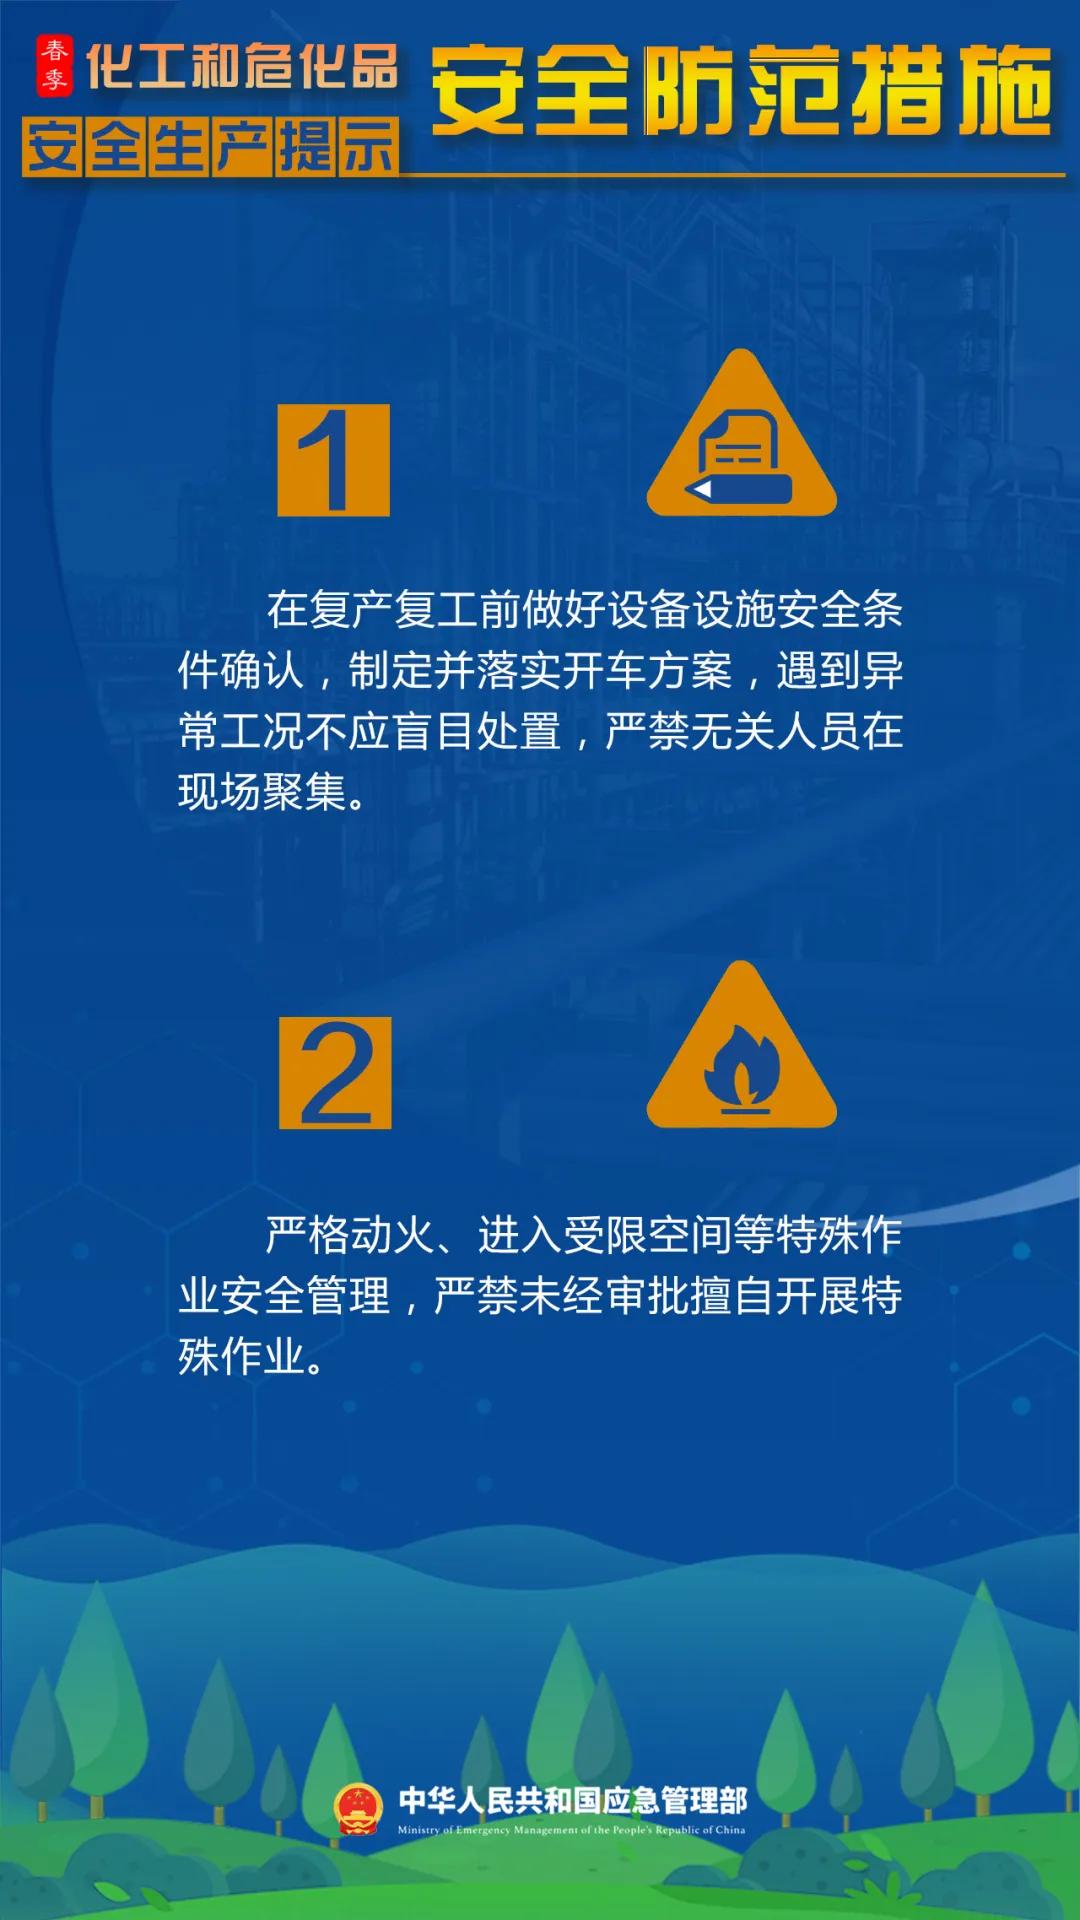 来源：中国应急管理报融媒体工作部 综合整理